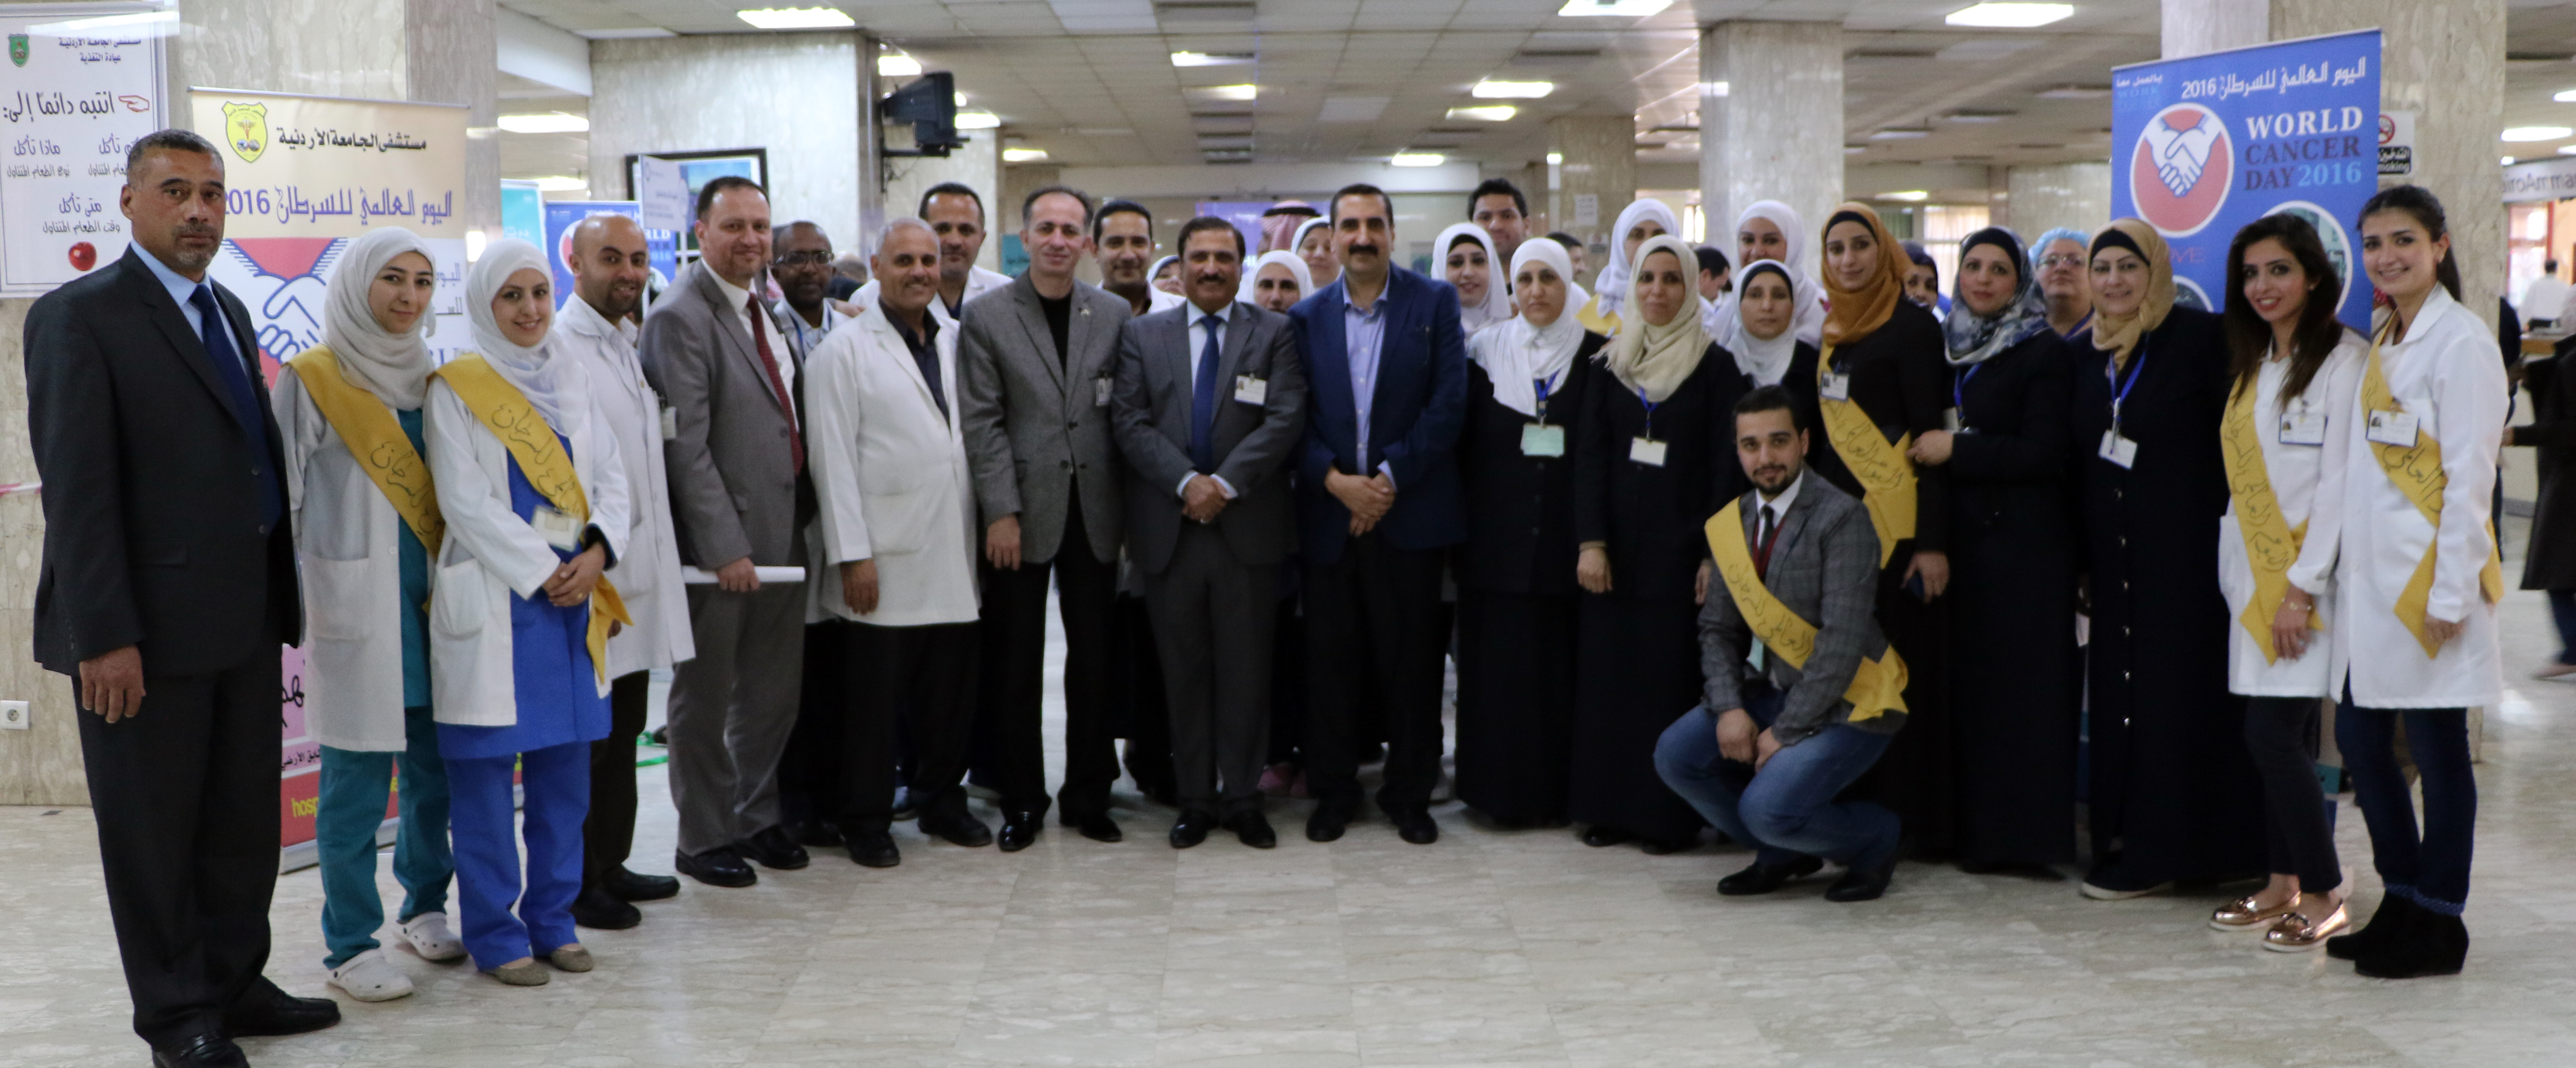 دائرة التمريض في مستشفى الجامعة الأردنيّة تُنظّم يوماً توعويّاً بعنوان "معاً لمكافحة مرض السرطان"